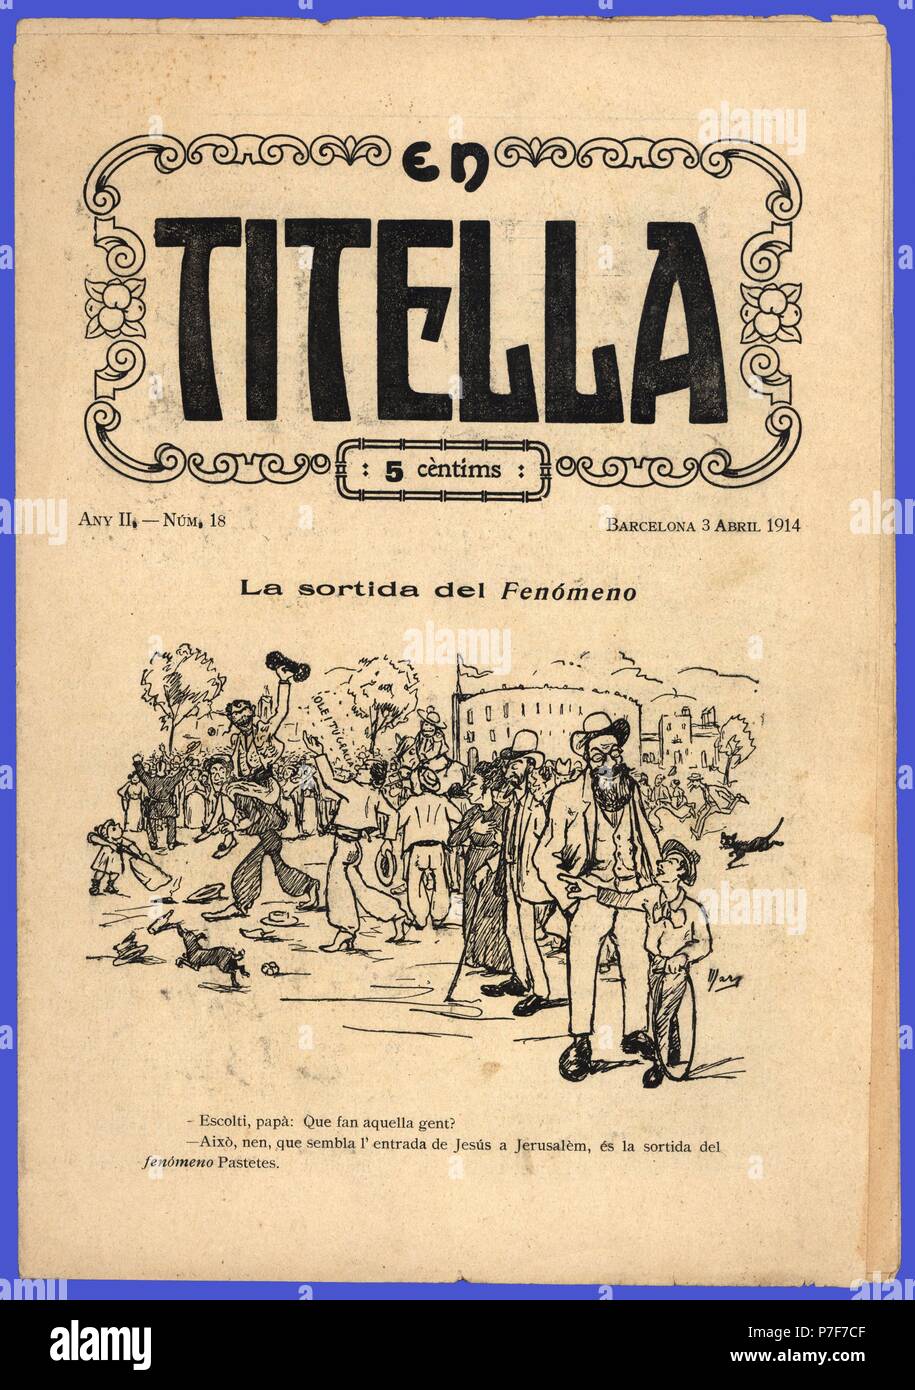 Portada de la revista de humor En Titella. Barcelona, abril de 1914. Crítica satírica del mundo del toreo. Stock Photo